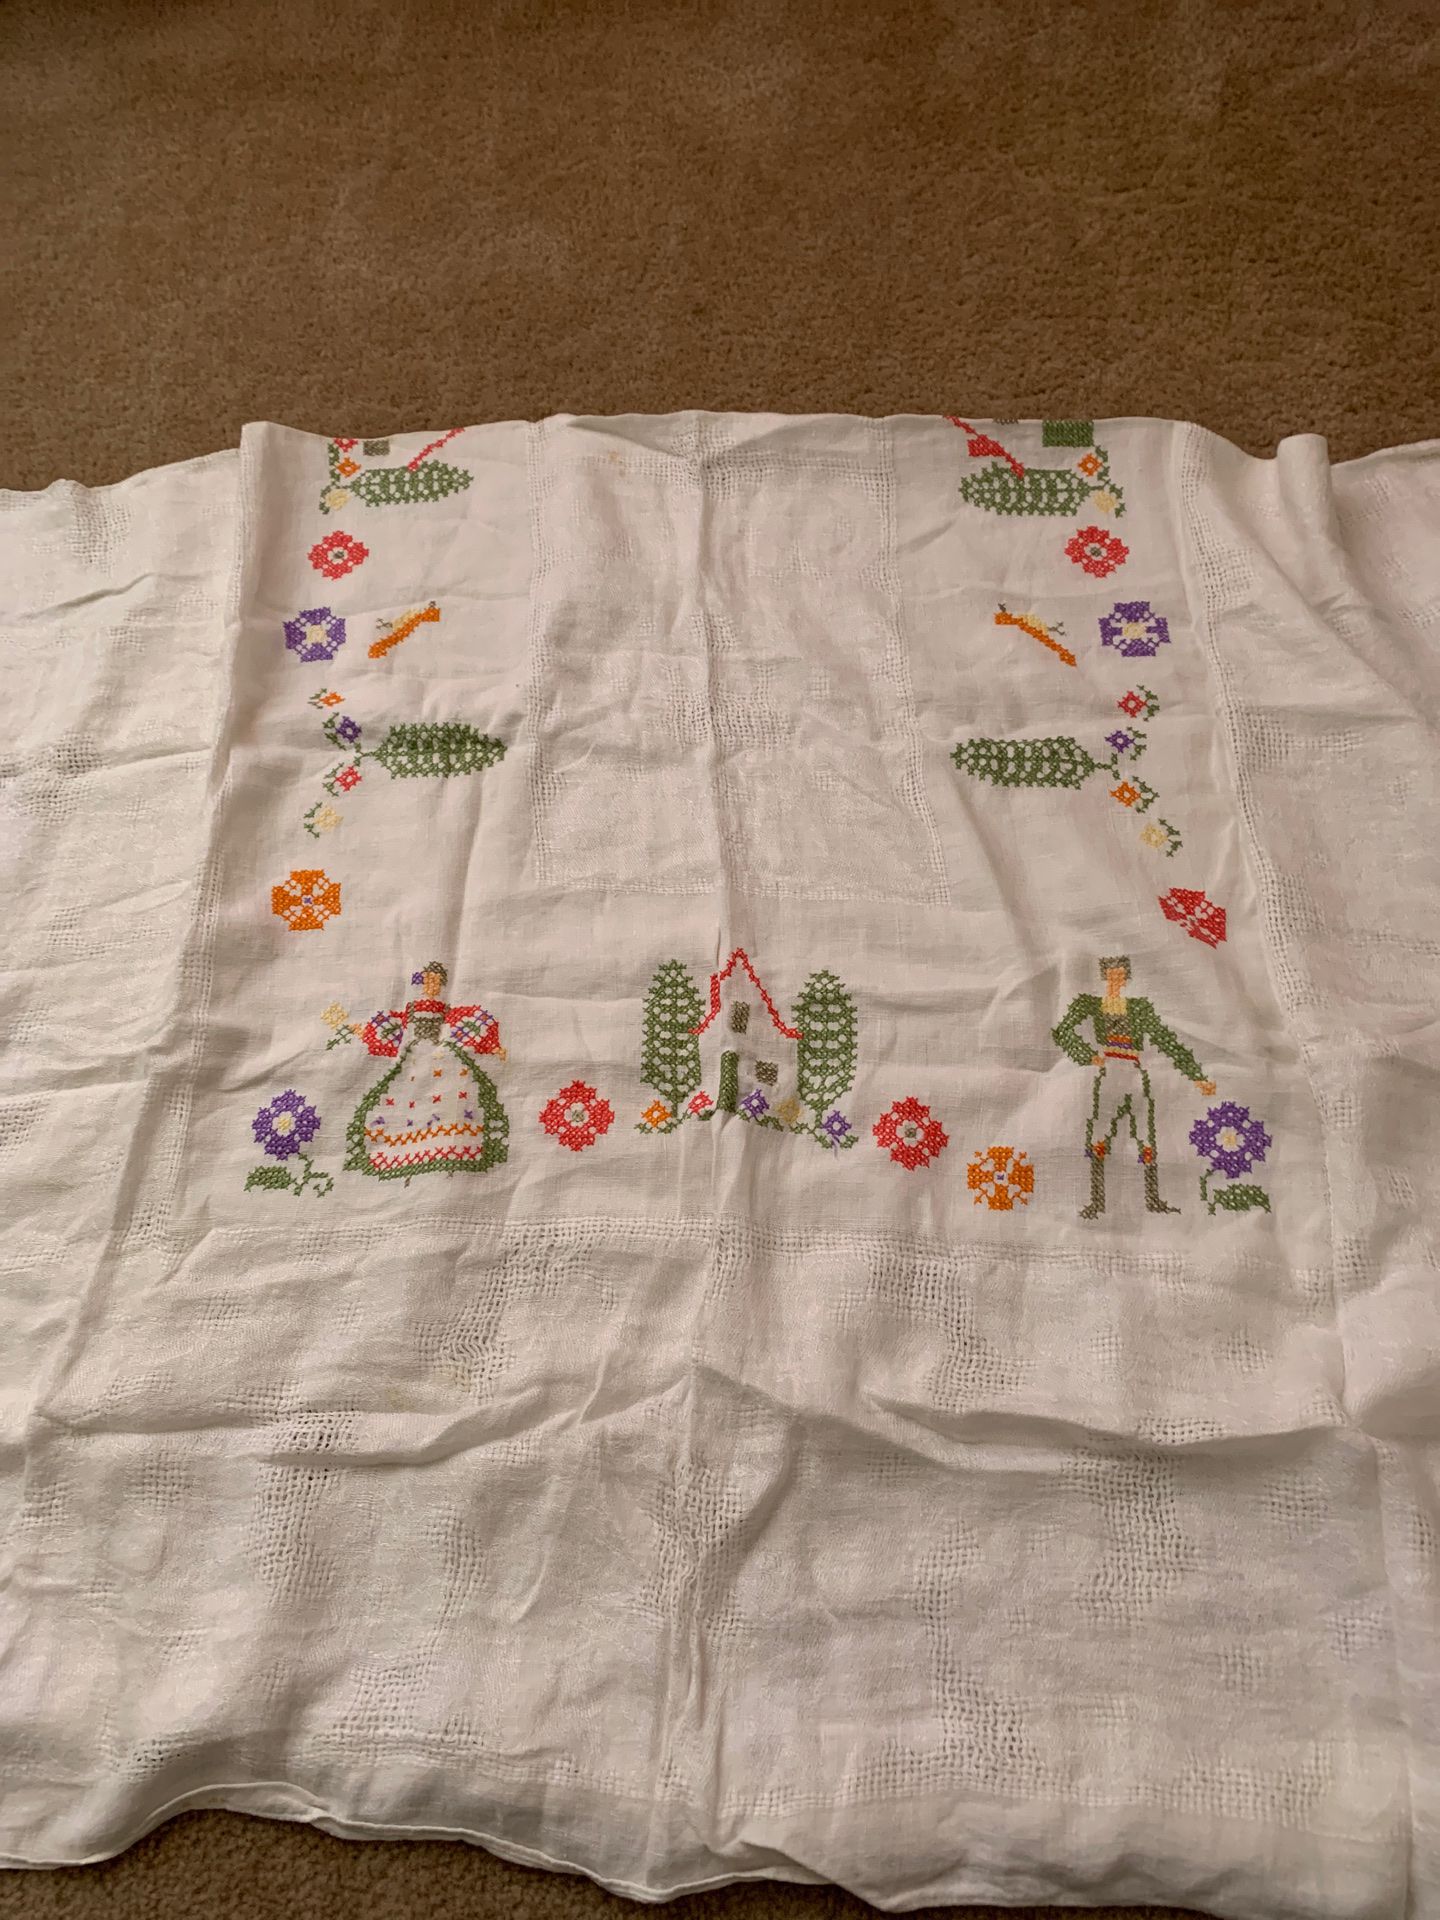 Cross stitch tablecloth 46x60